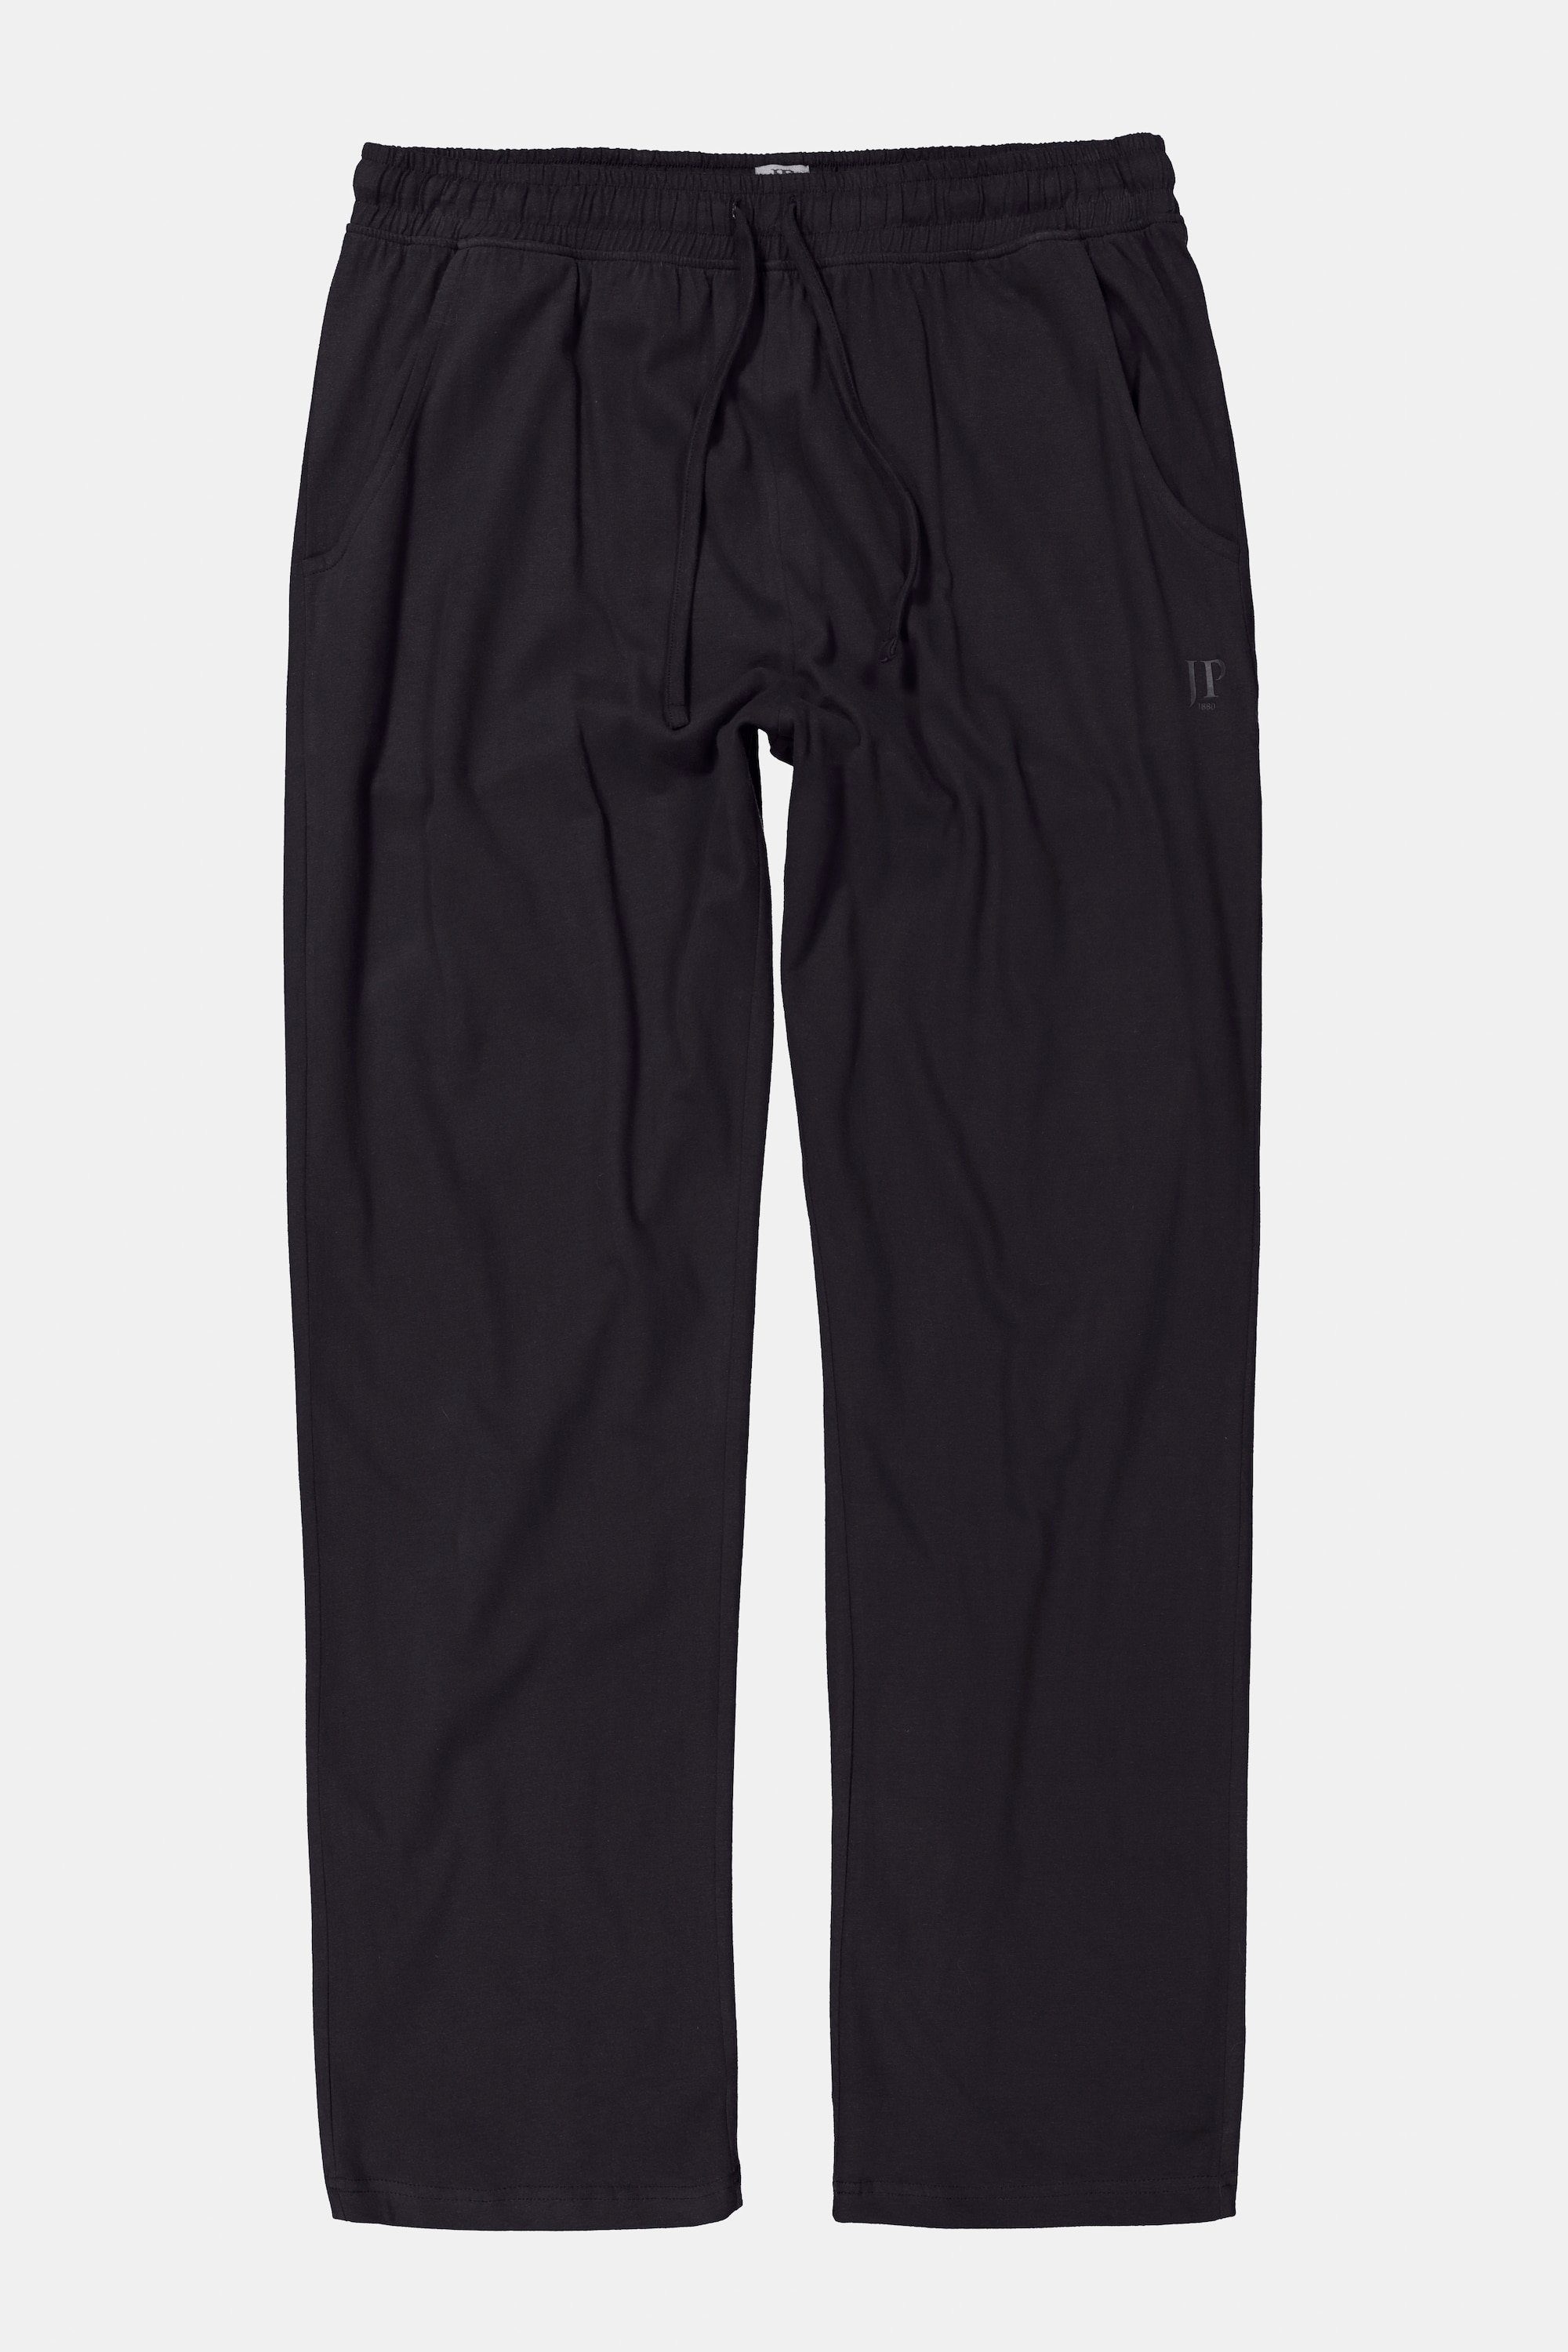 Schlafanzug-Hose JP1880 Elastikbund Homewear lange Schlafanzug schwarz Form